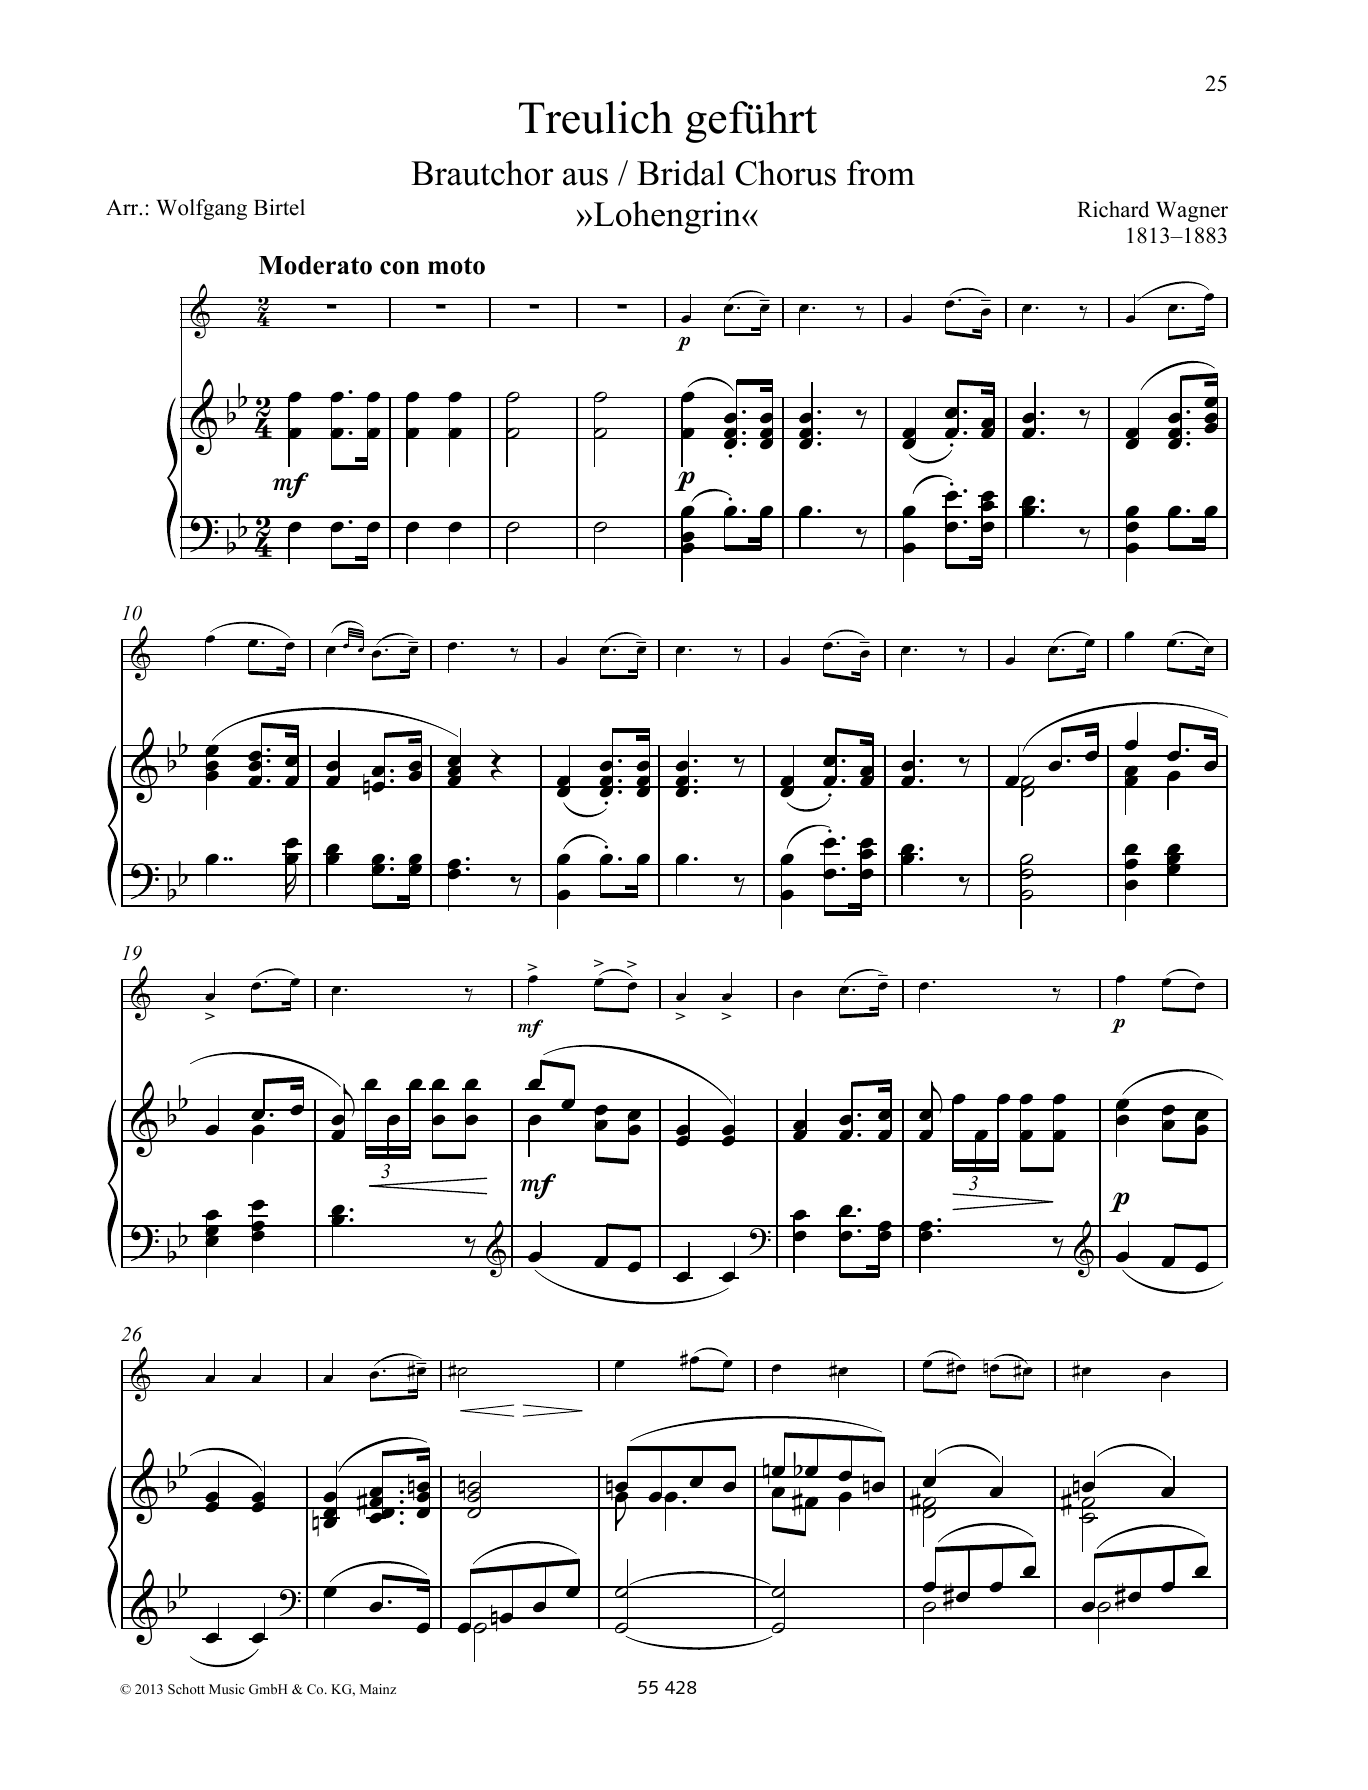 Download Richard Wagner Treulich geführt Sheet Music